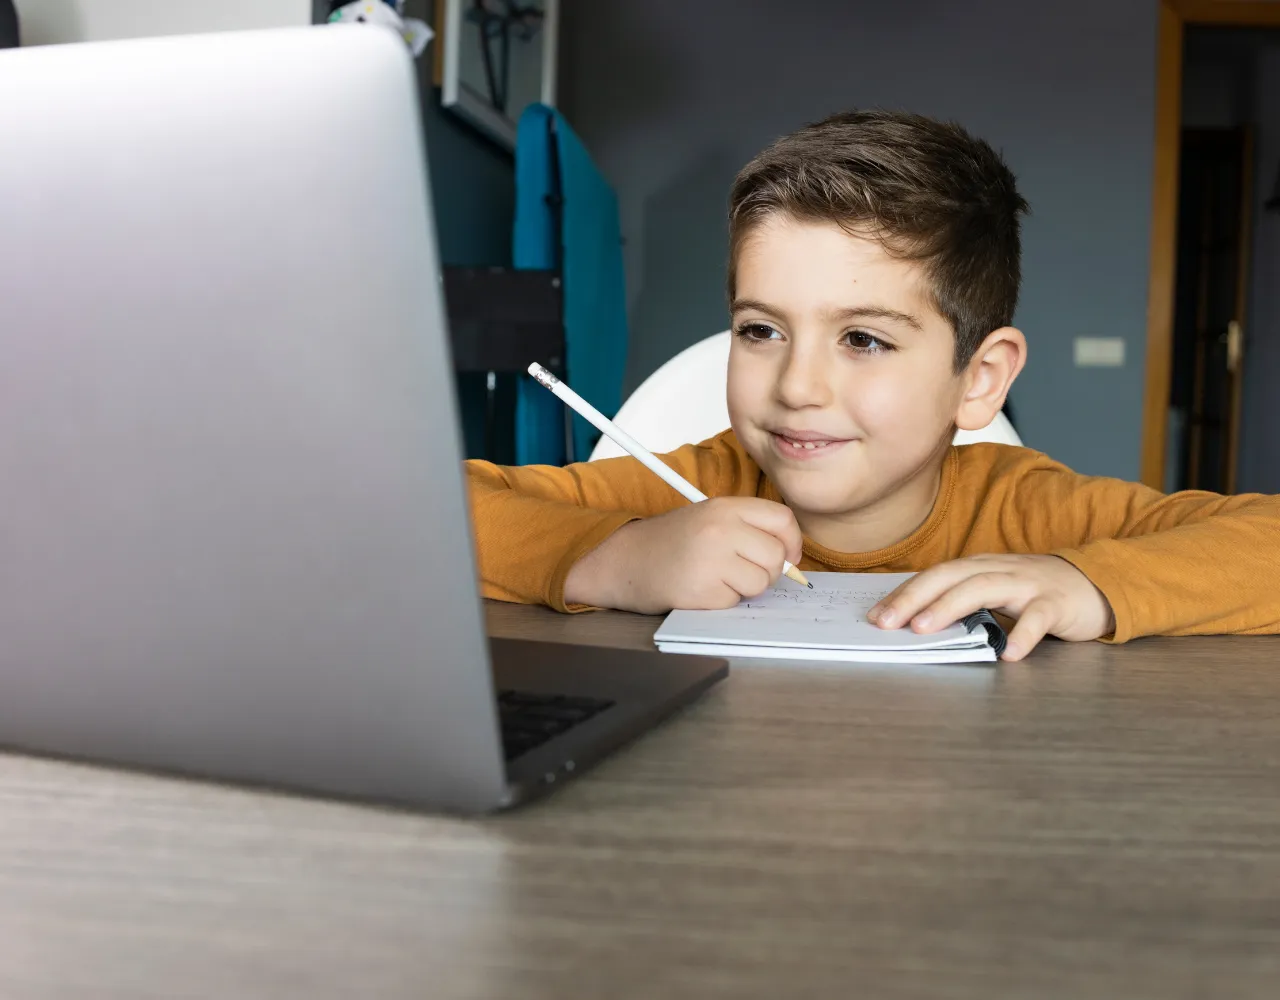 Um menino sentado em uma mesa com um laptop e uma caneta.